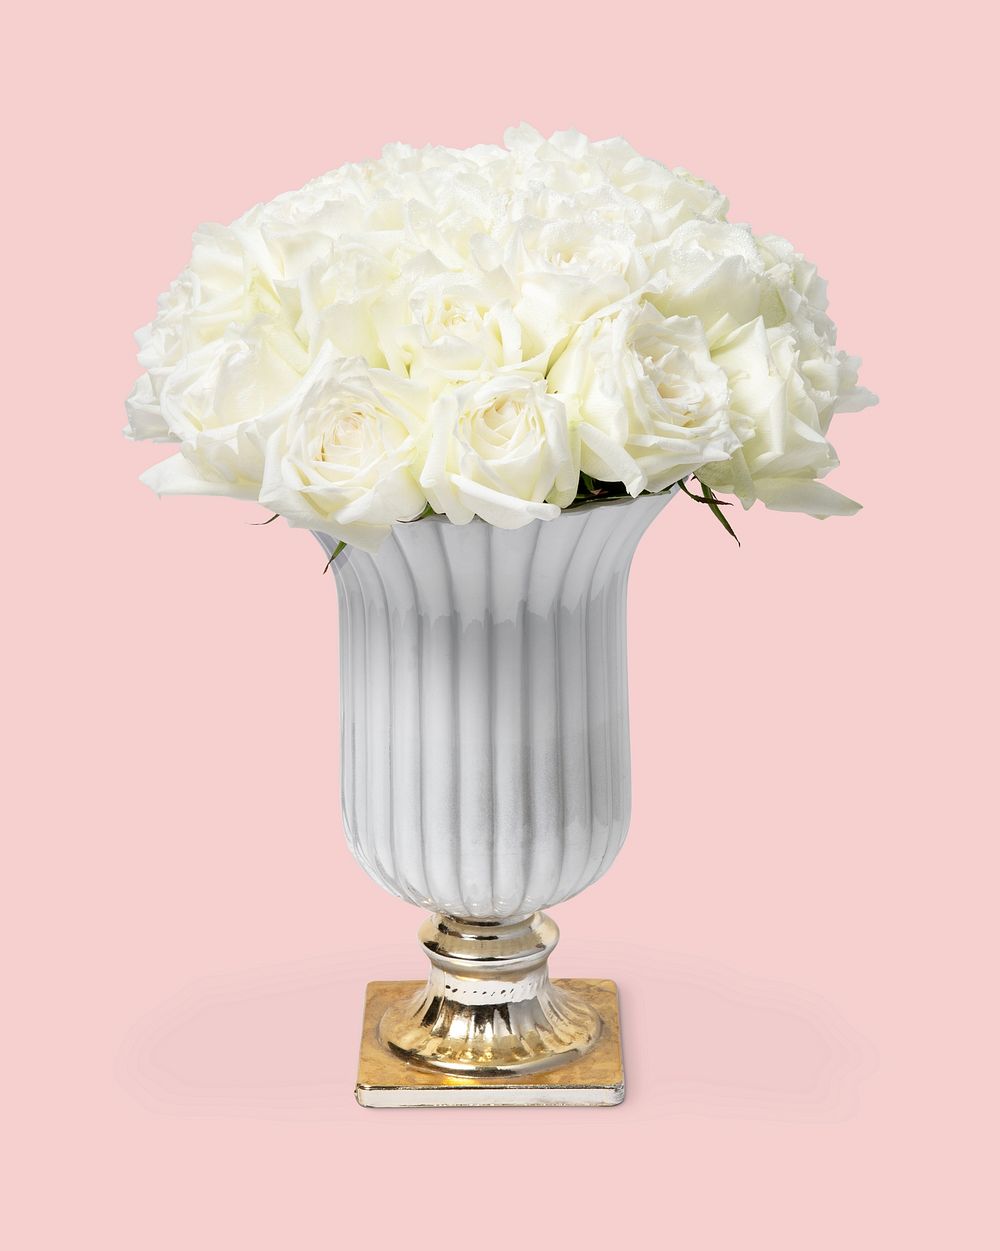 Fresh white roses in ceramic vase